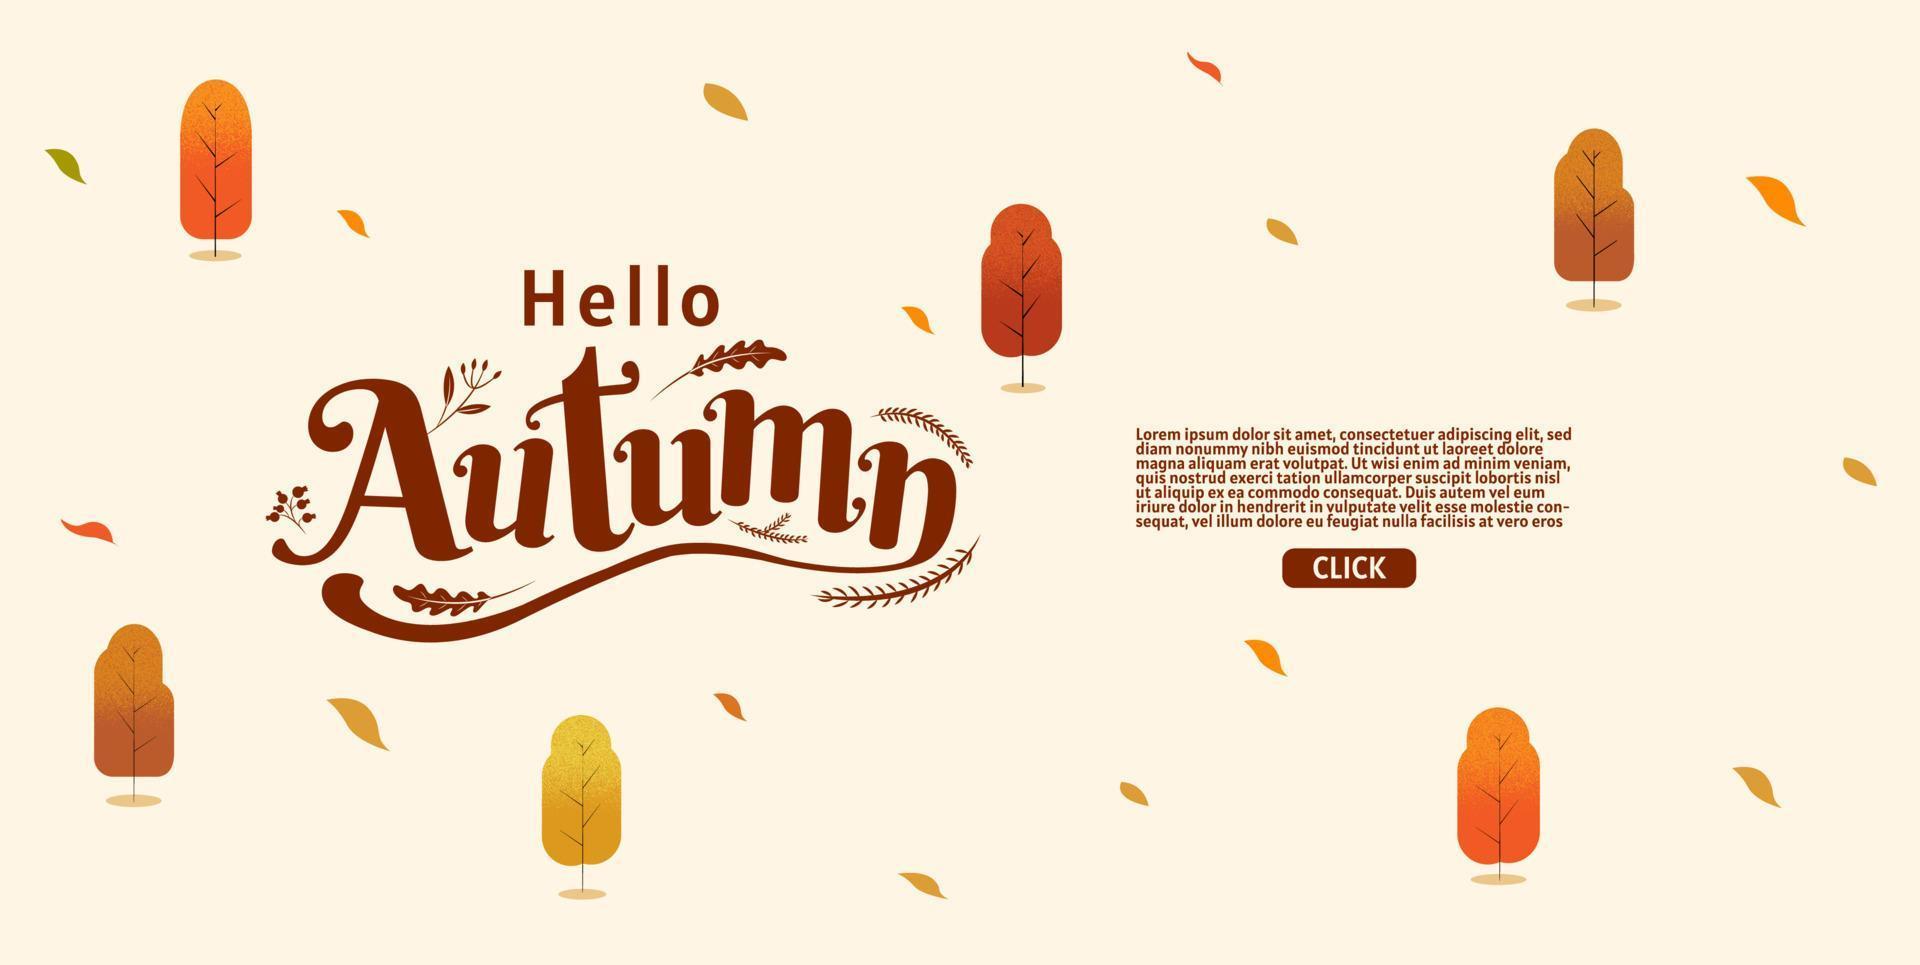 bonjour lautomne, le jour de thanksgiving, automne, typographie, conception de calligraphie, vecteur